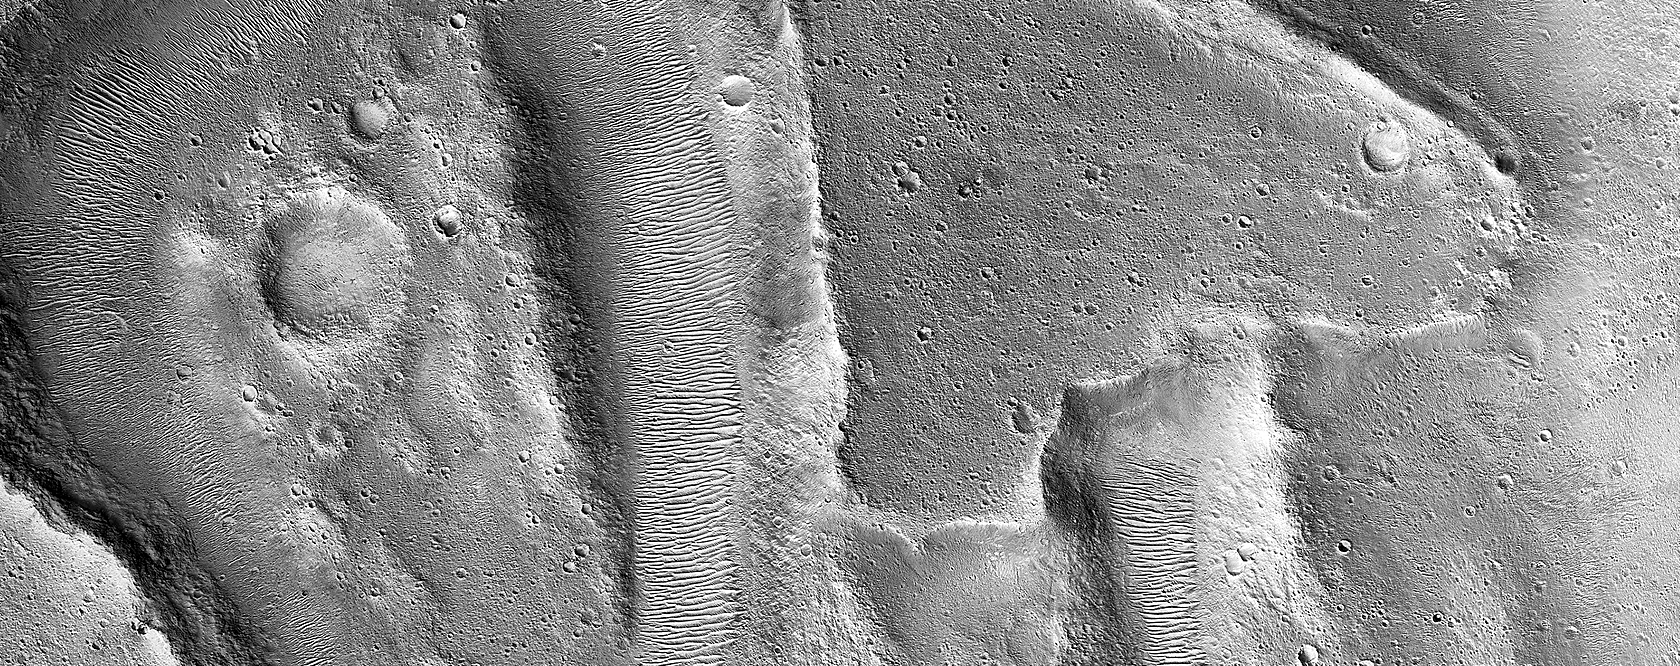 Εδαφικοί σχηματισμοί στην Κοιλάδα του Άρη (Ares Vallis)